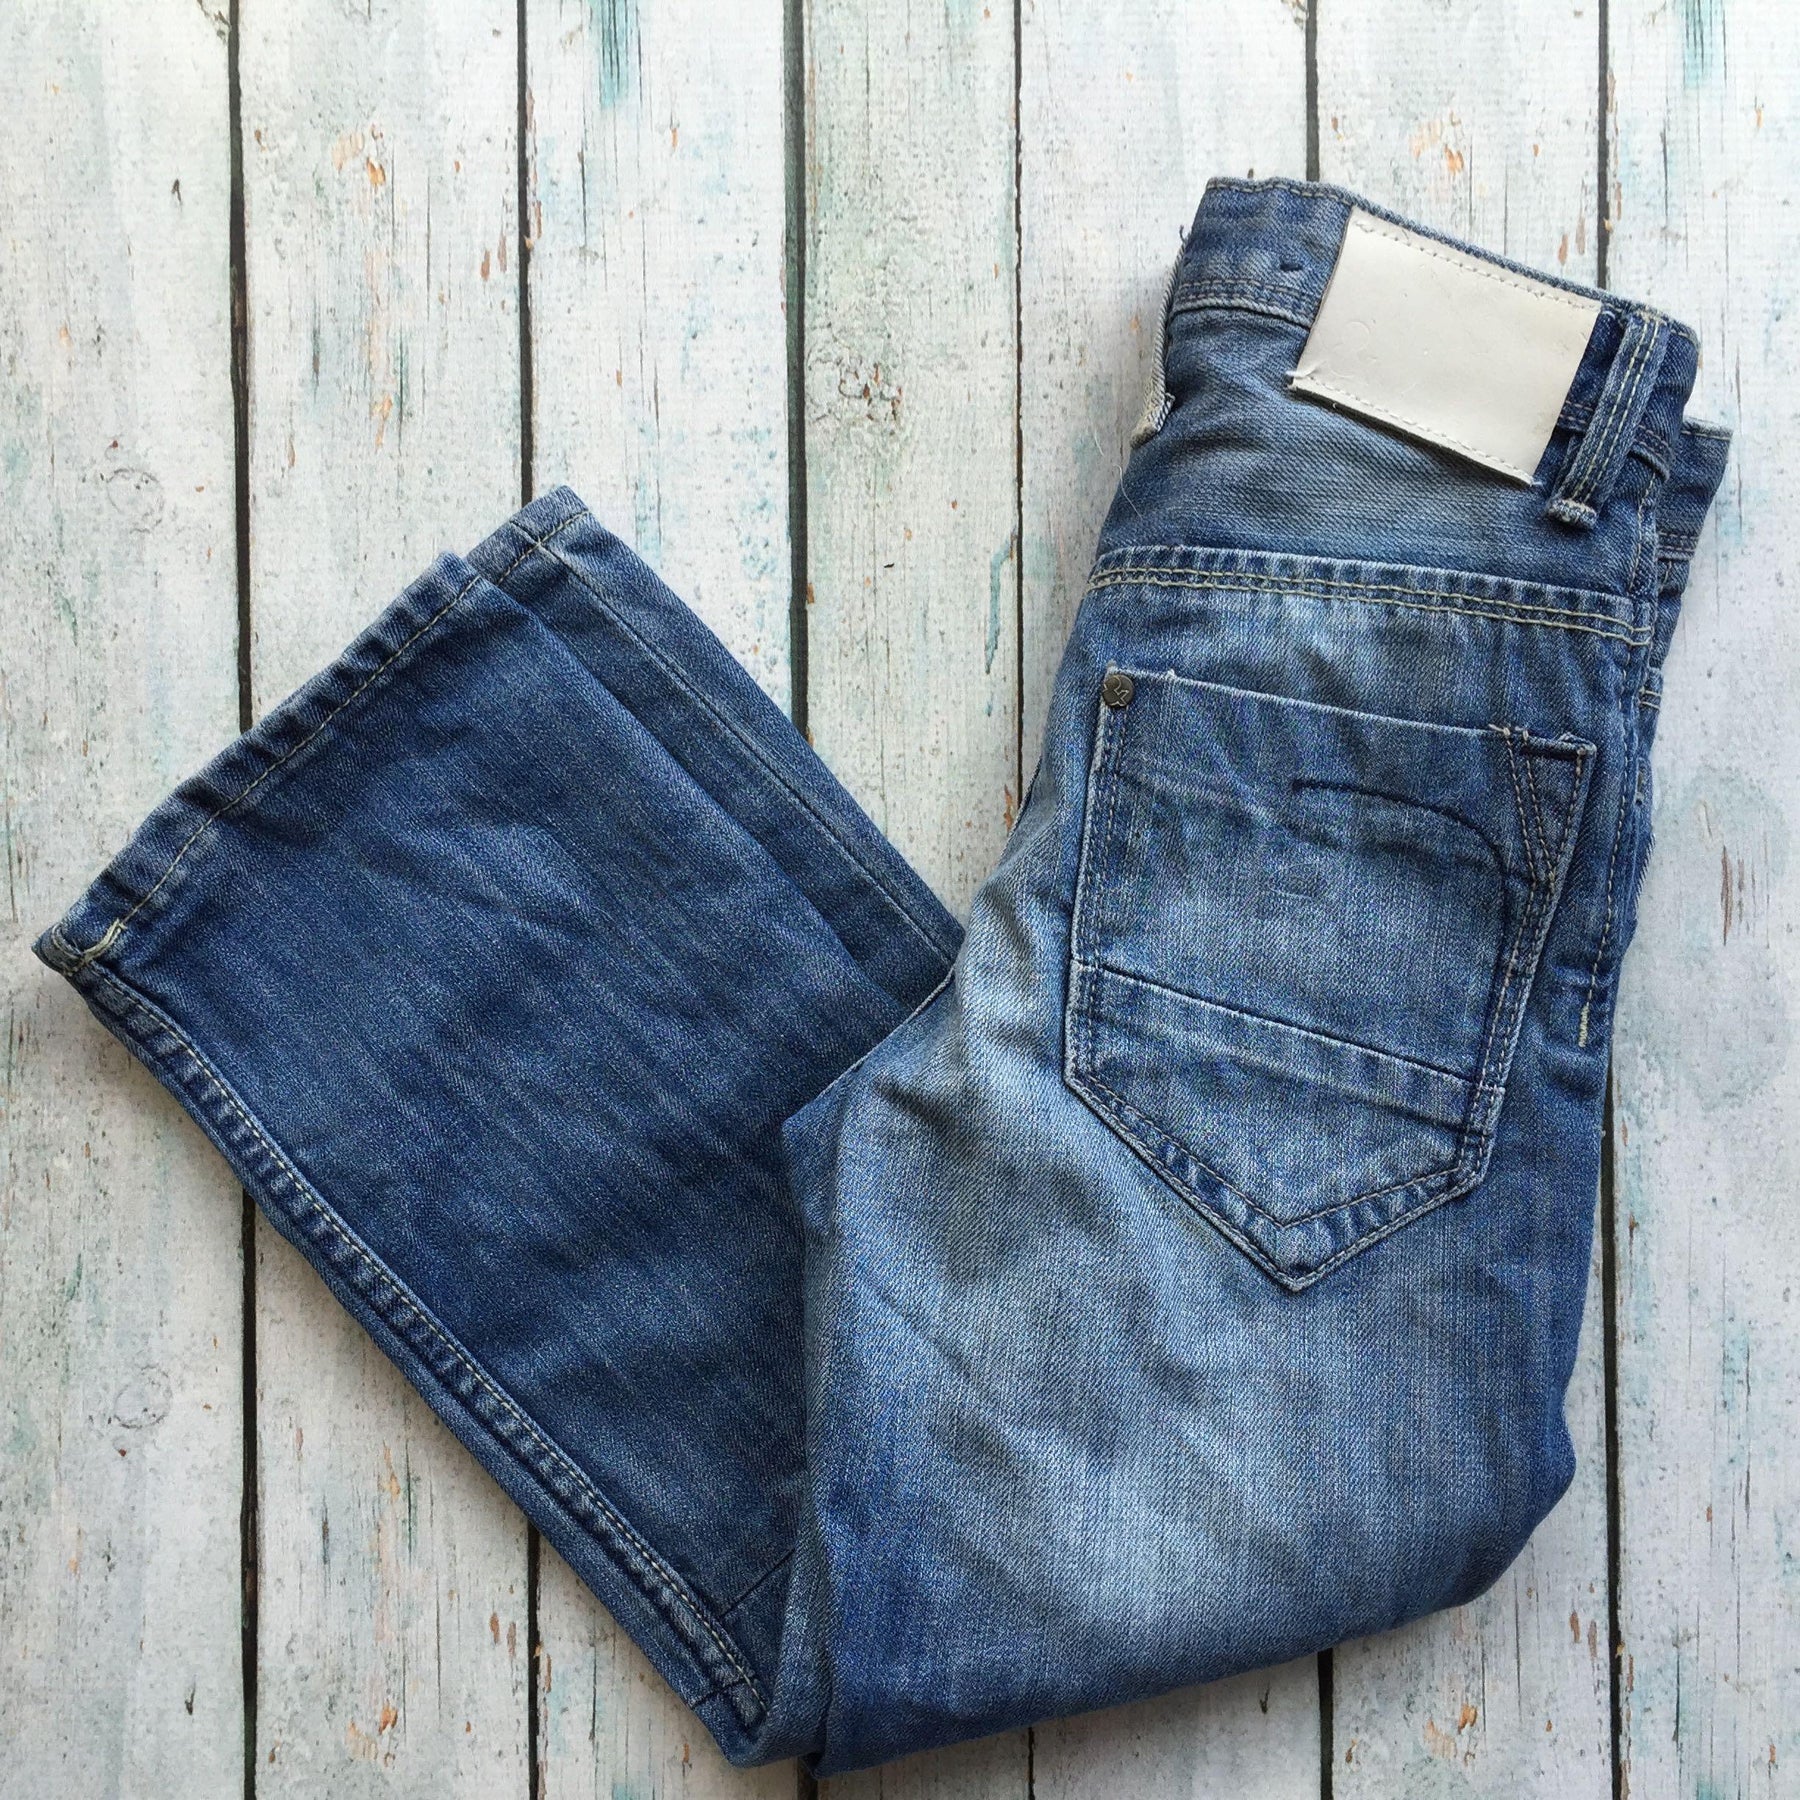 Bragg Boys Straight Leg Jeans - Size 5/6 – Jean